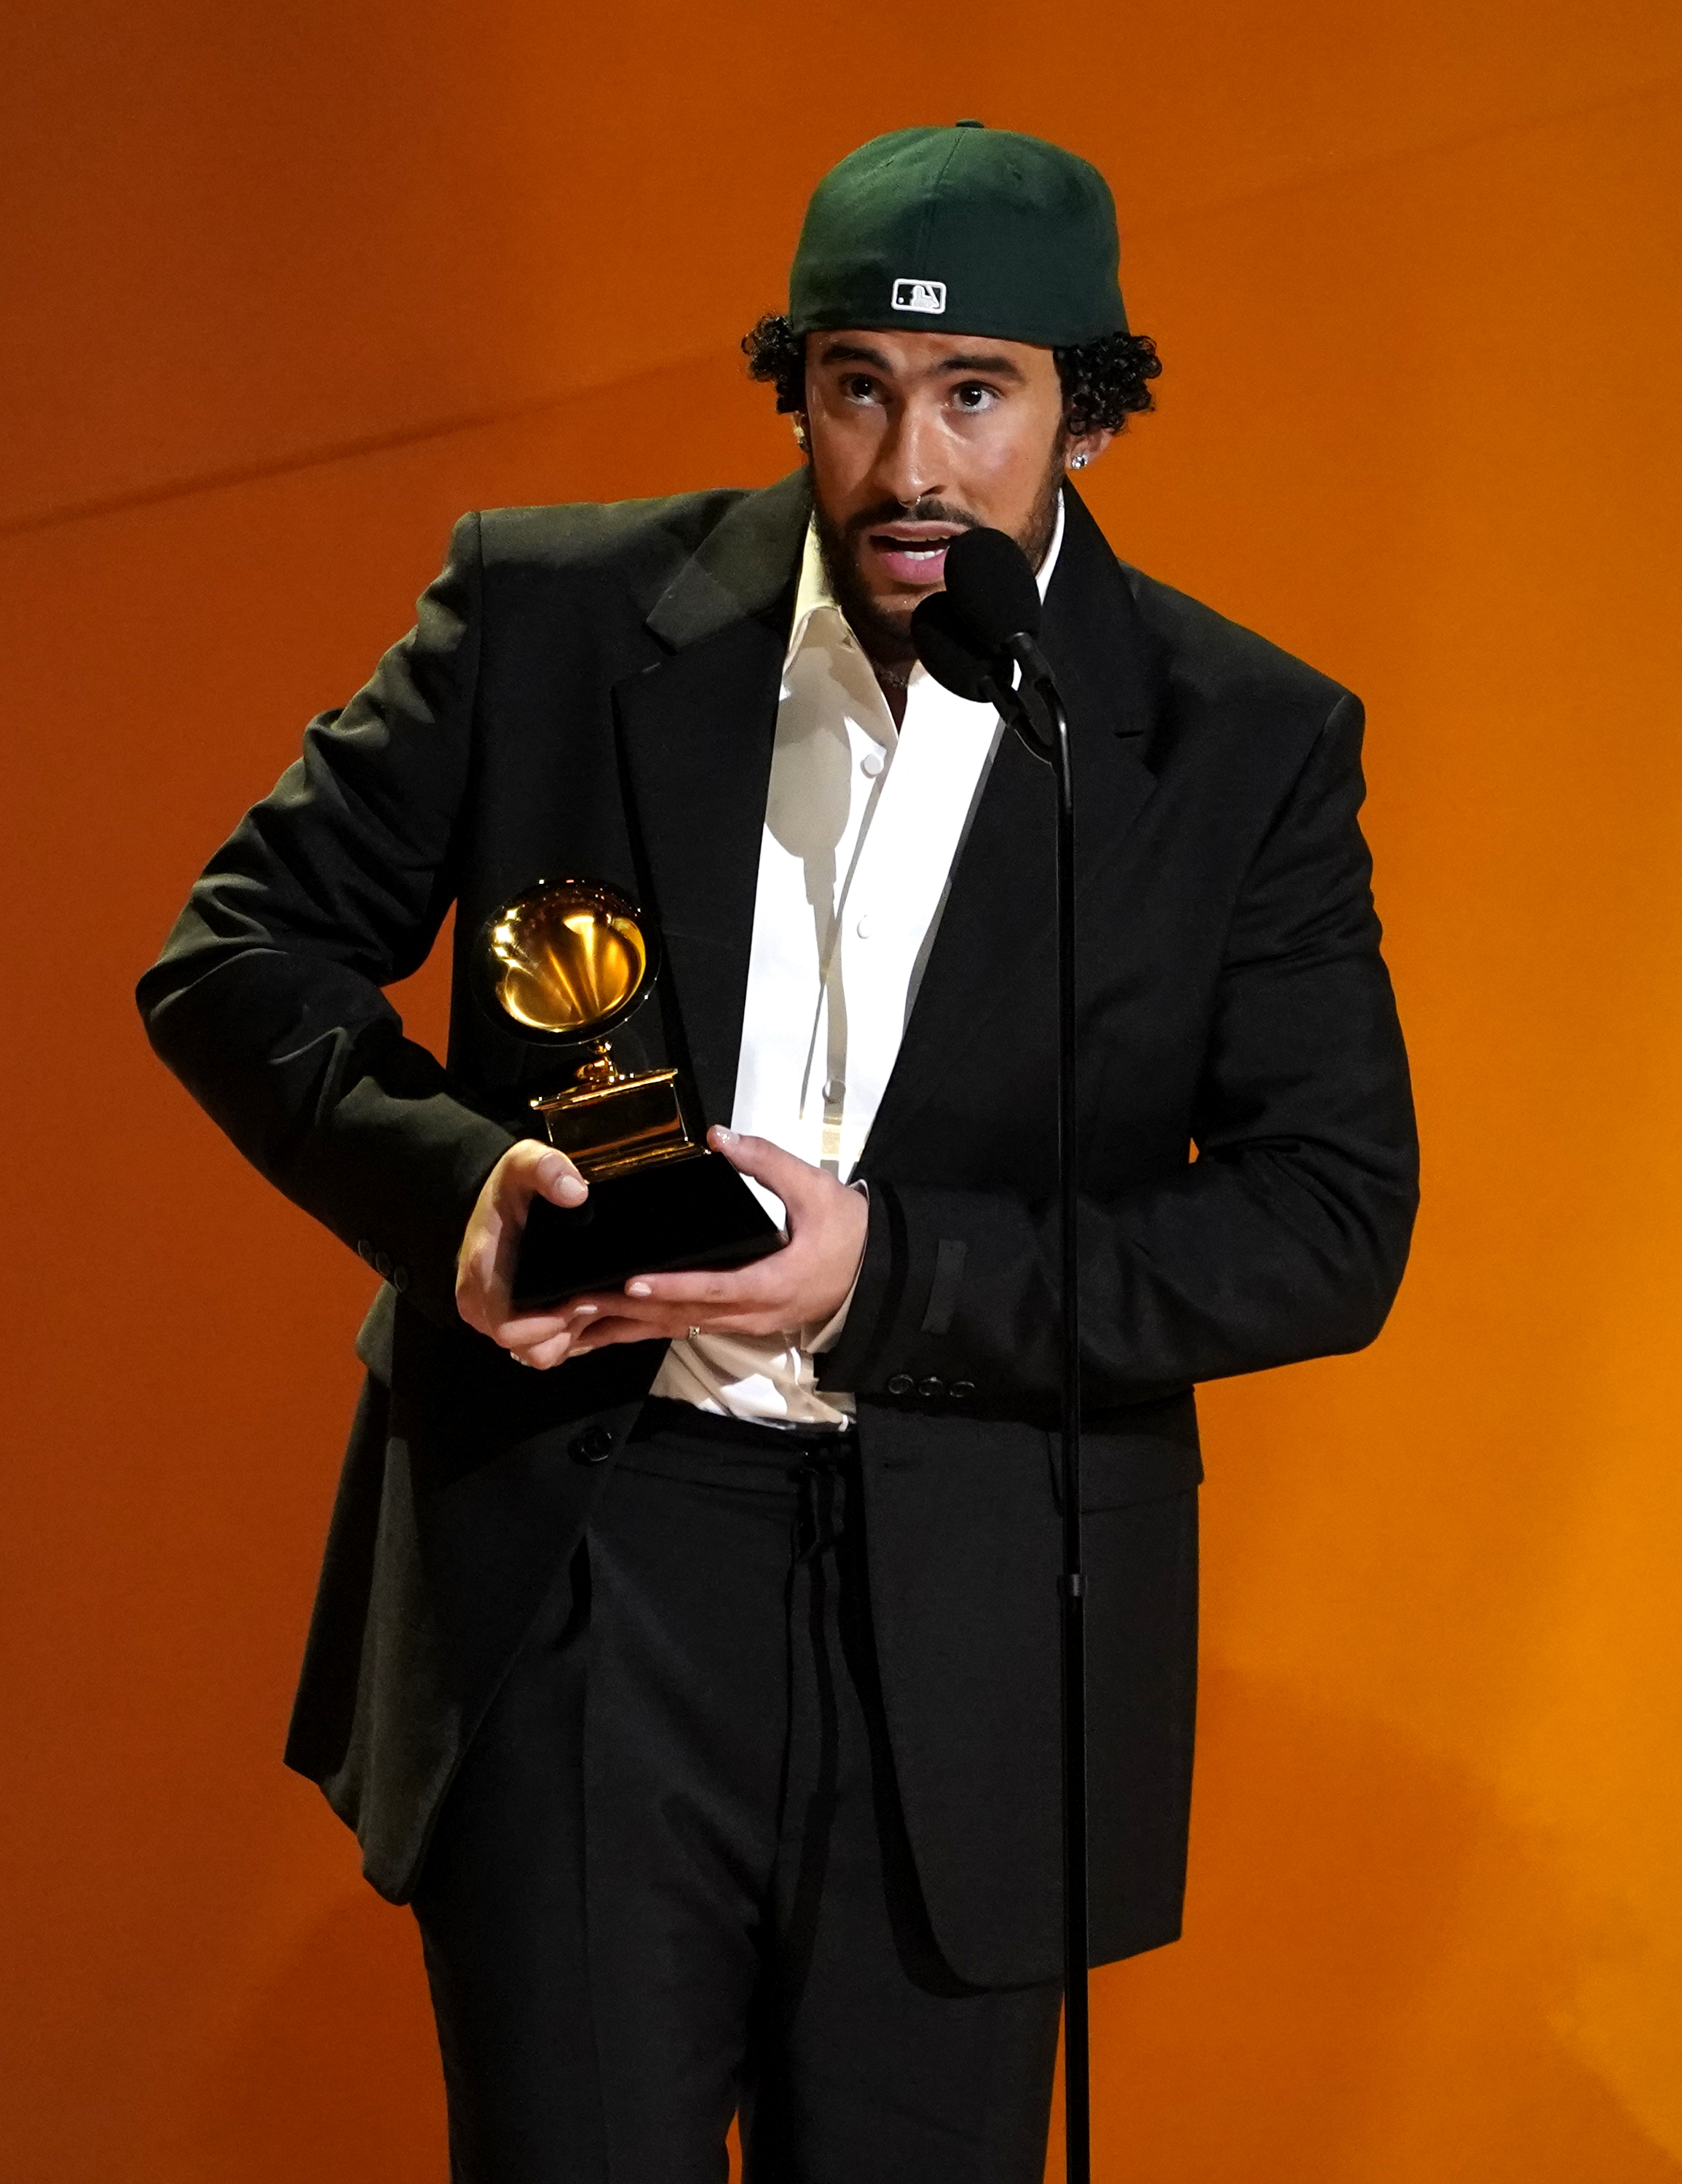 Bad Bunny, izquierda, recibe el premio a mejor álbum de música urbana por "Un verano sin ti" en la 65a entrega anual del Grammy el 5 de febrero de 2023 en Los Angeles. A la derecha está Sza. (Foto AP/Chris Pizzello)